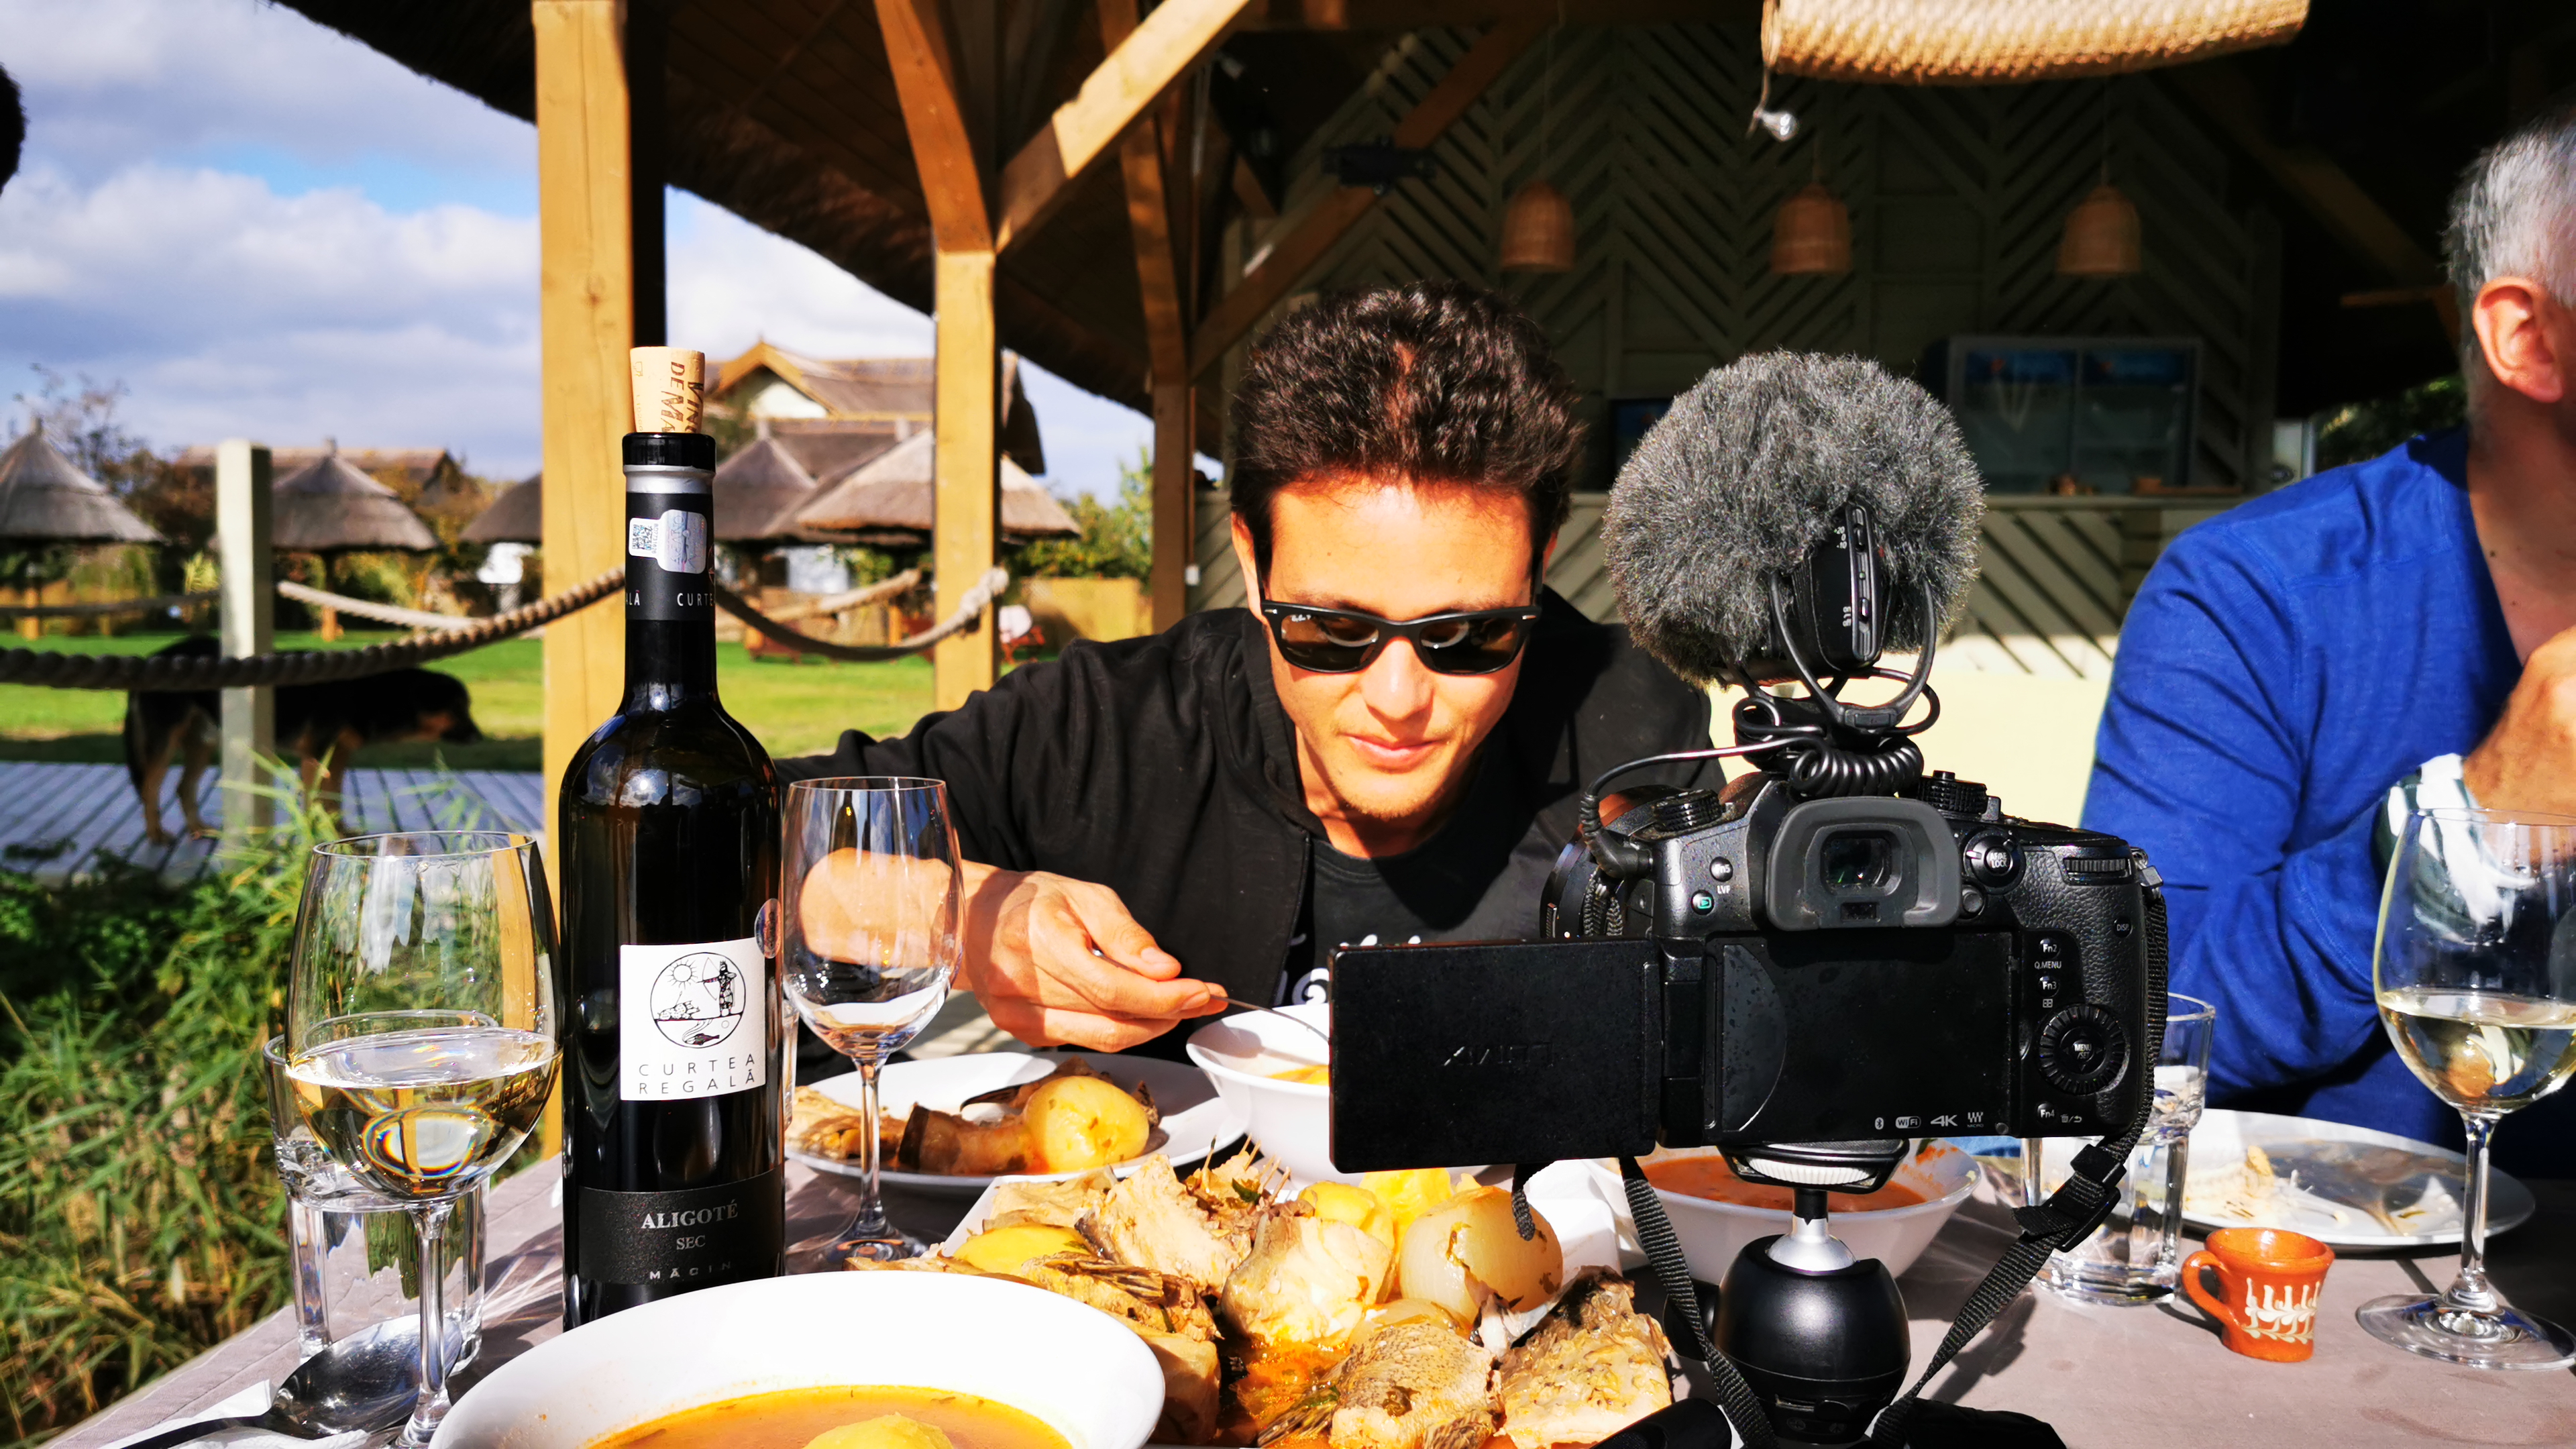 Unul dintre cei mai cunoscuți vloggeri mondiali din domeniul food & travel promovează Delta Dunarii